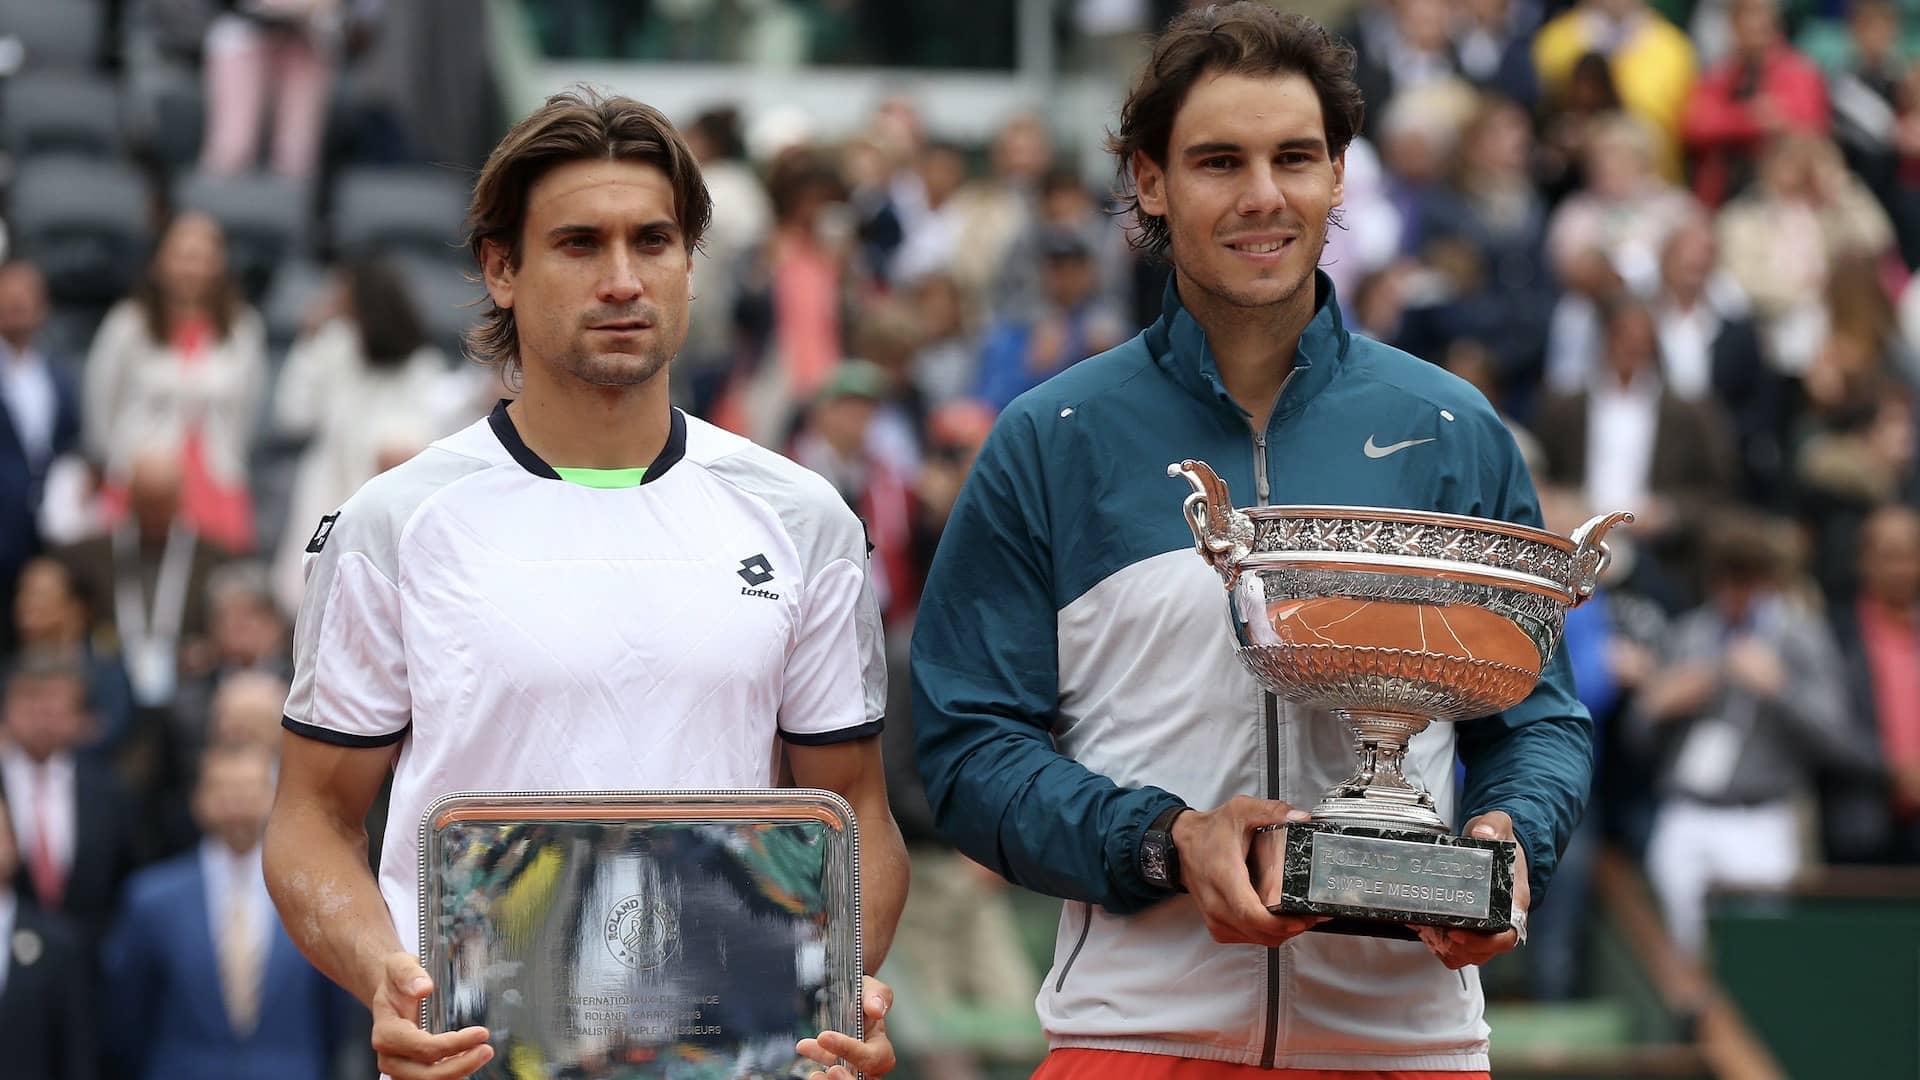 Roland Garros 2013: La Primera Final De Ferrer En Un Grand Slam | ATP Tour  | Tenis